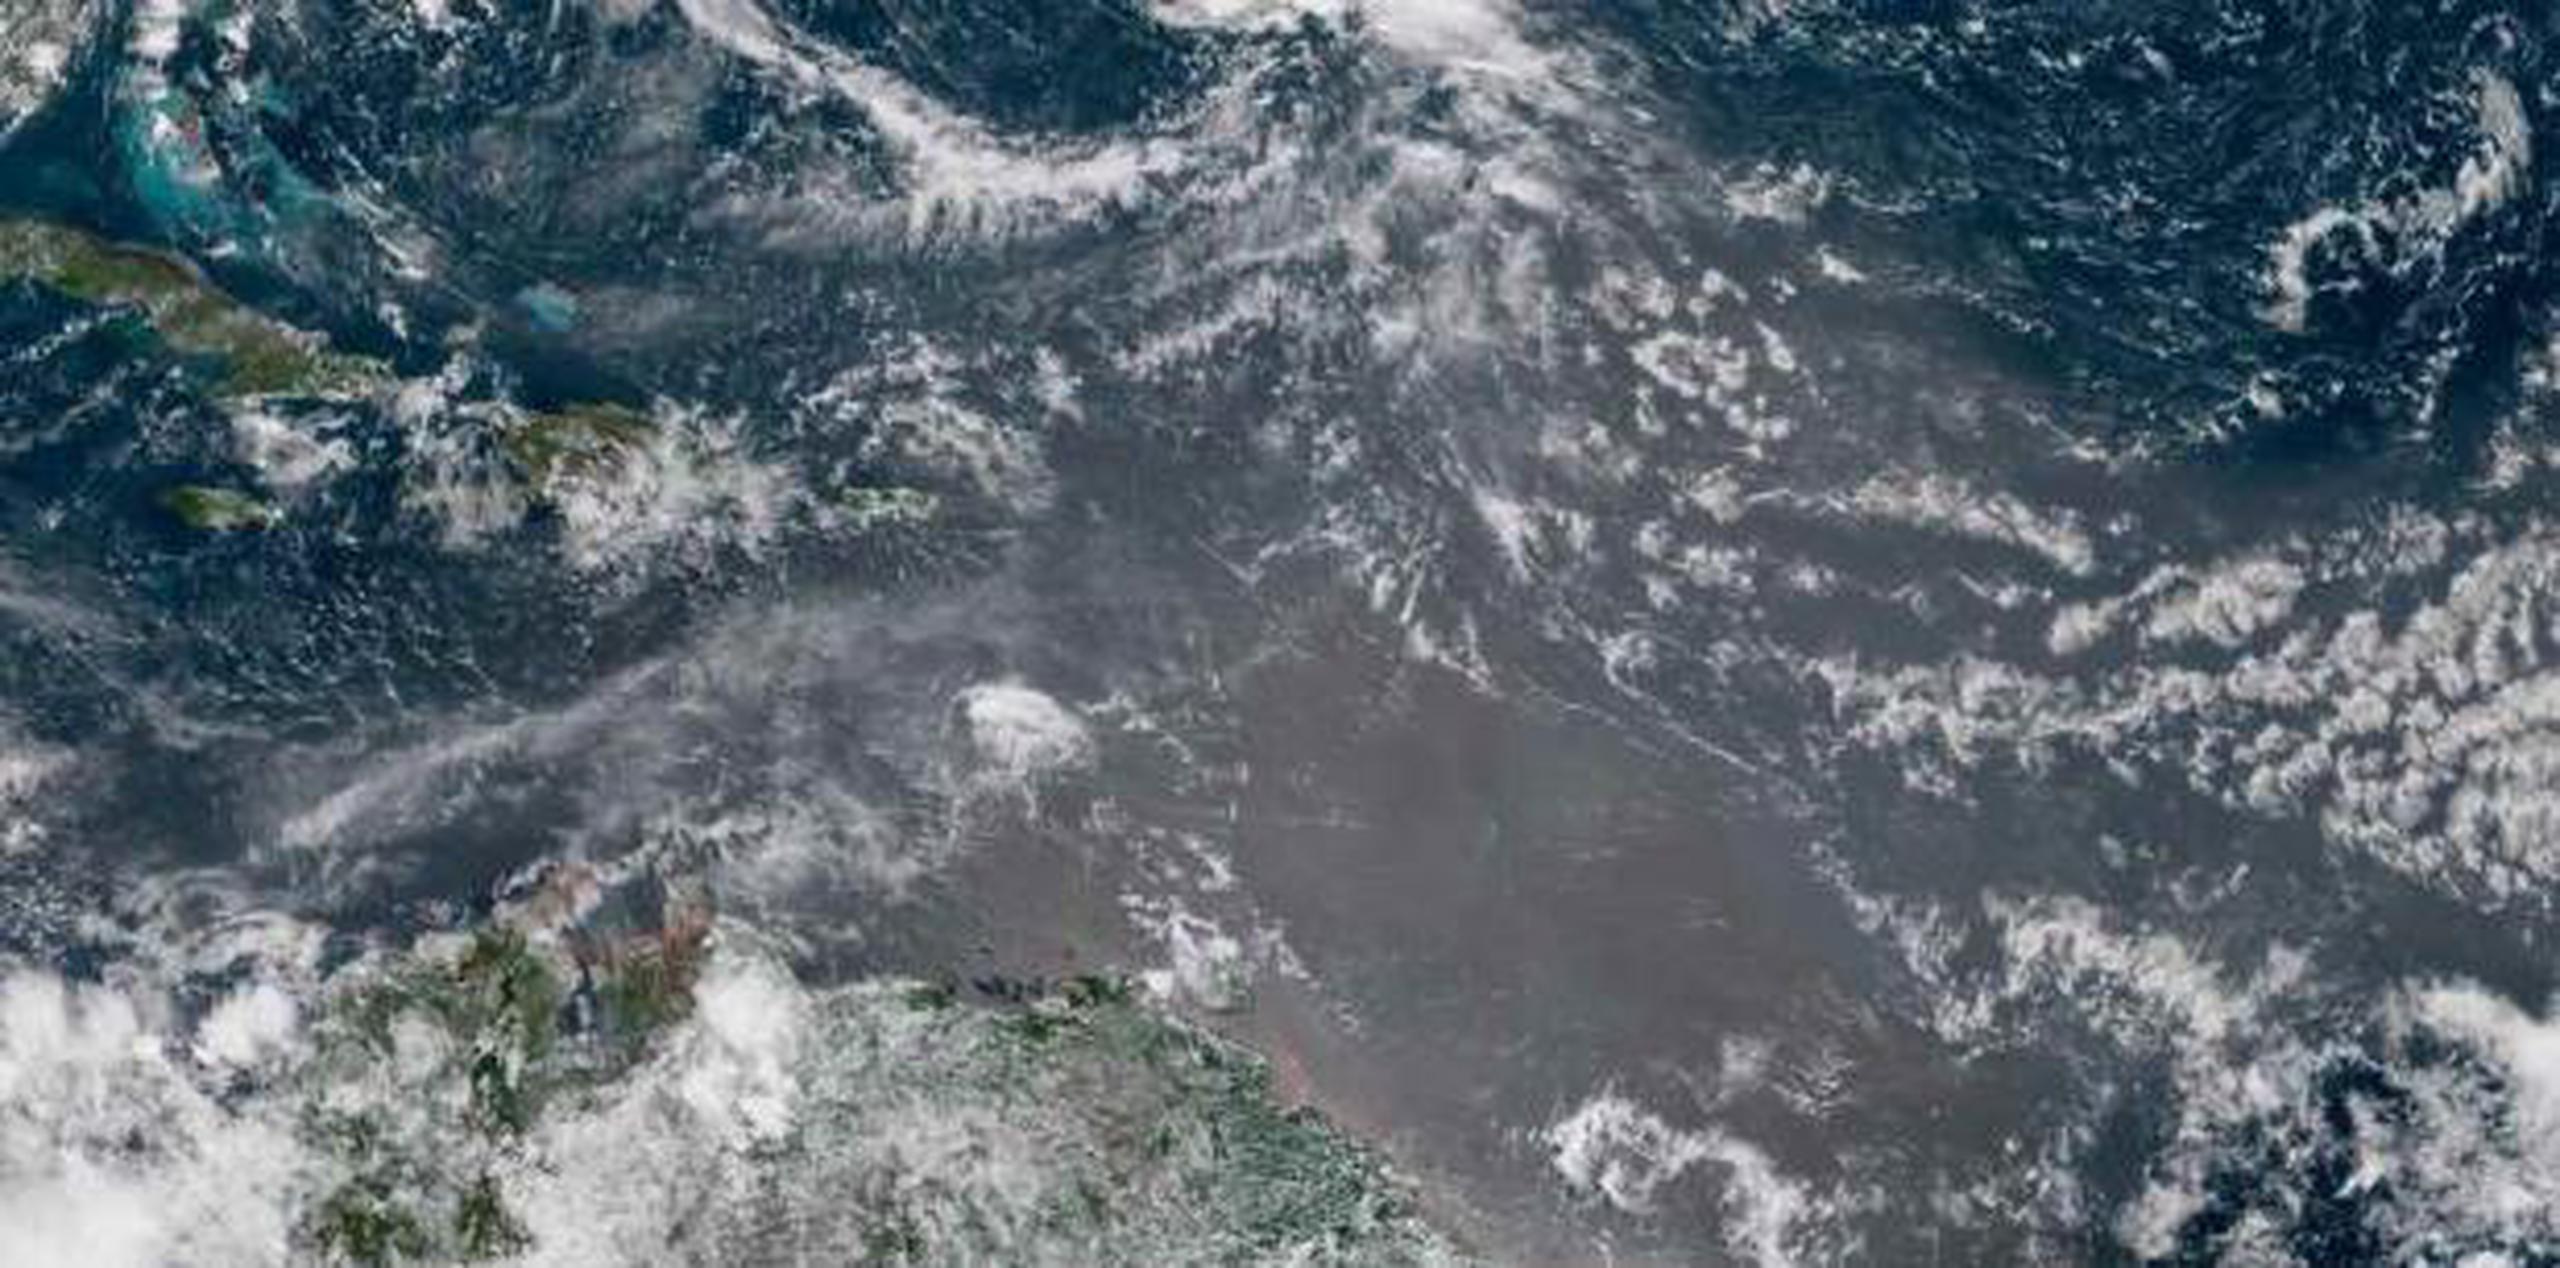 La Junta de Calidad Ambiental mantiene el índice de calidad del aire bueno a través de la isla. (NOAA)